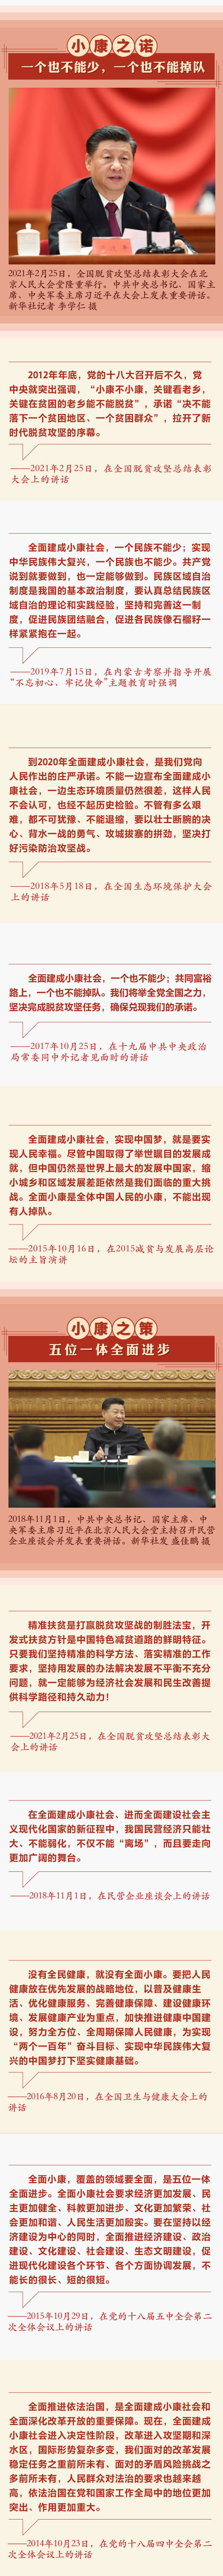 习近平这些话给出答案2 人民网-中国共产党新闻网.jpg